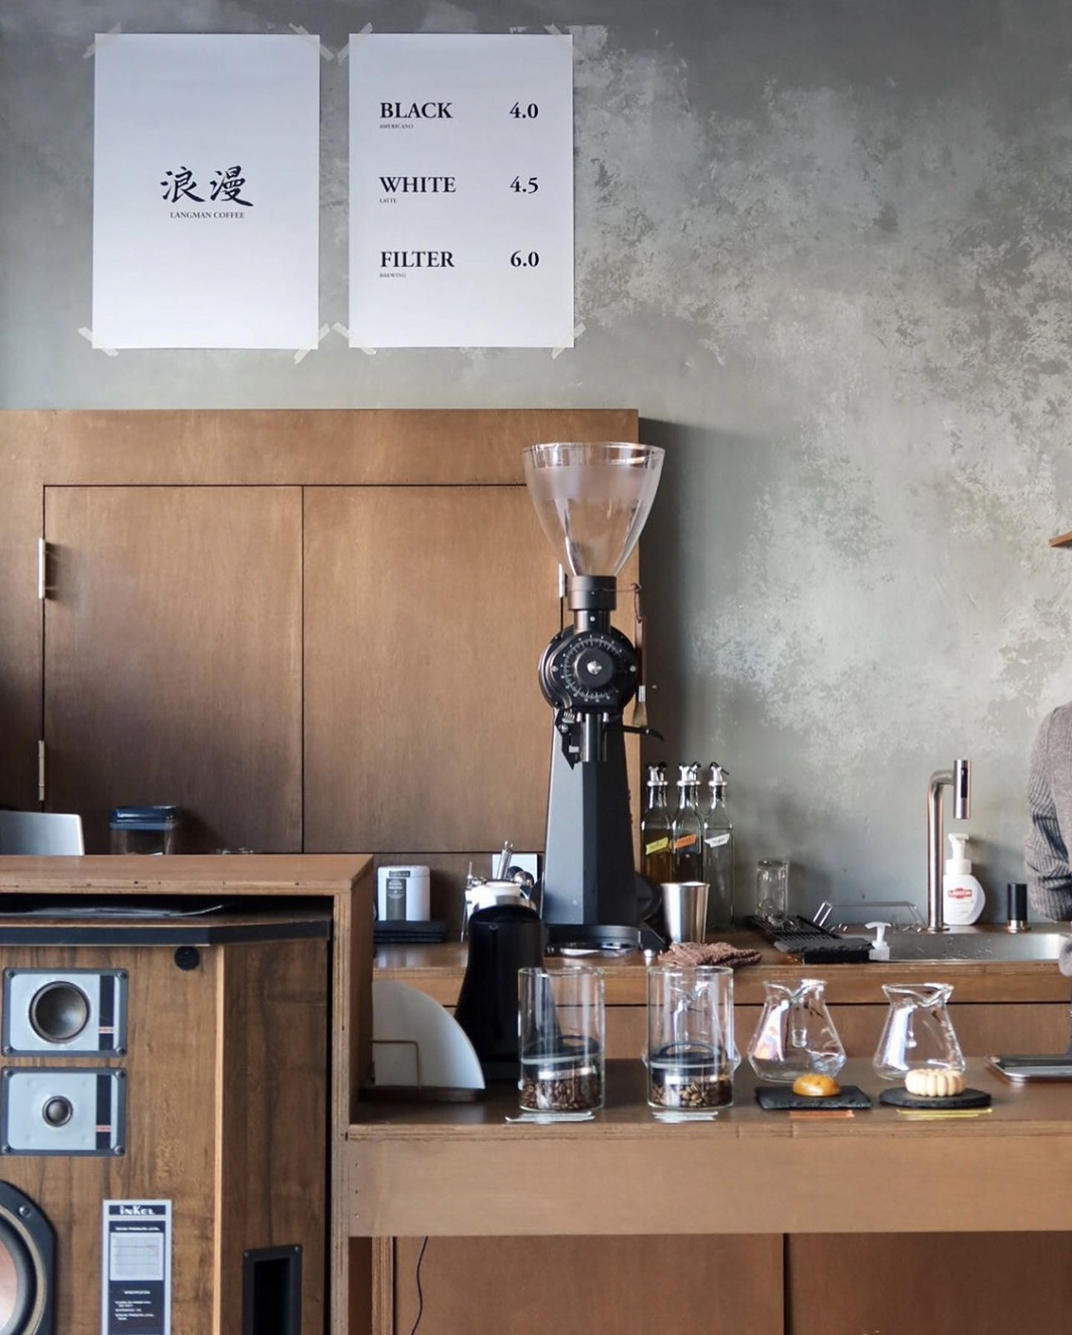 浪漫咖啡langman_coffee 韩国 深圳 上海 北京 广州 武汉 咖啡店 餐饮商业 logo设计 vi设计 空间设计